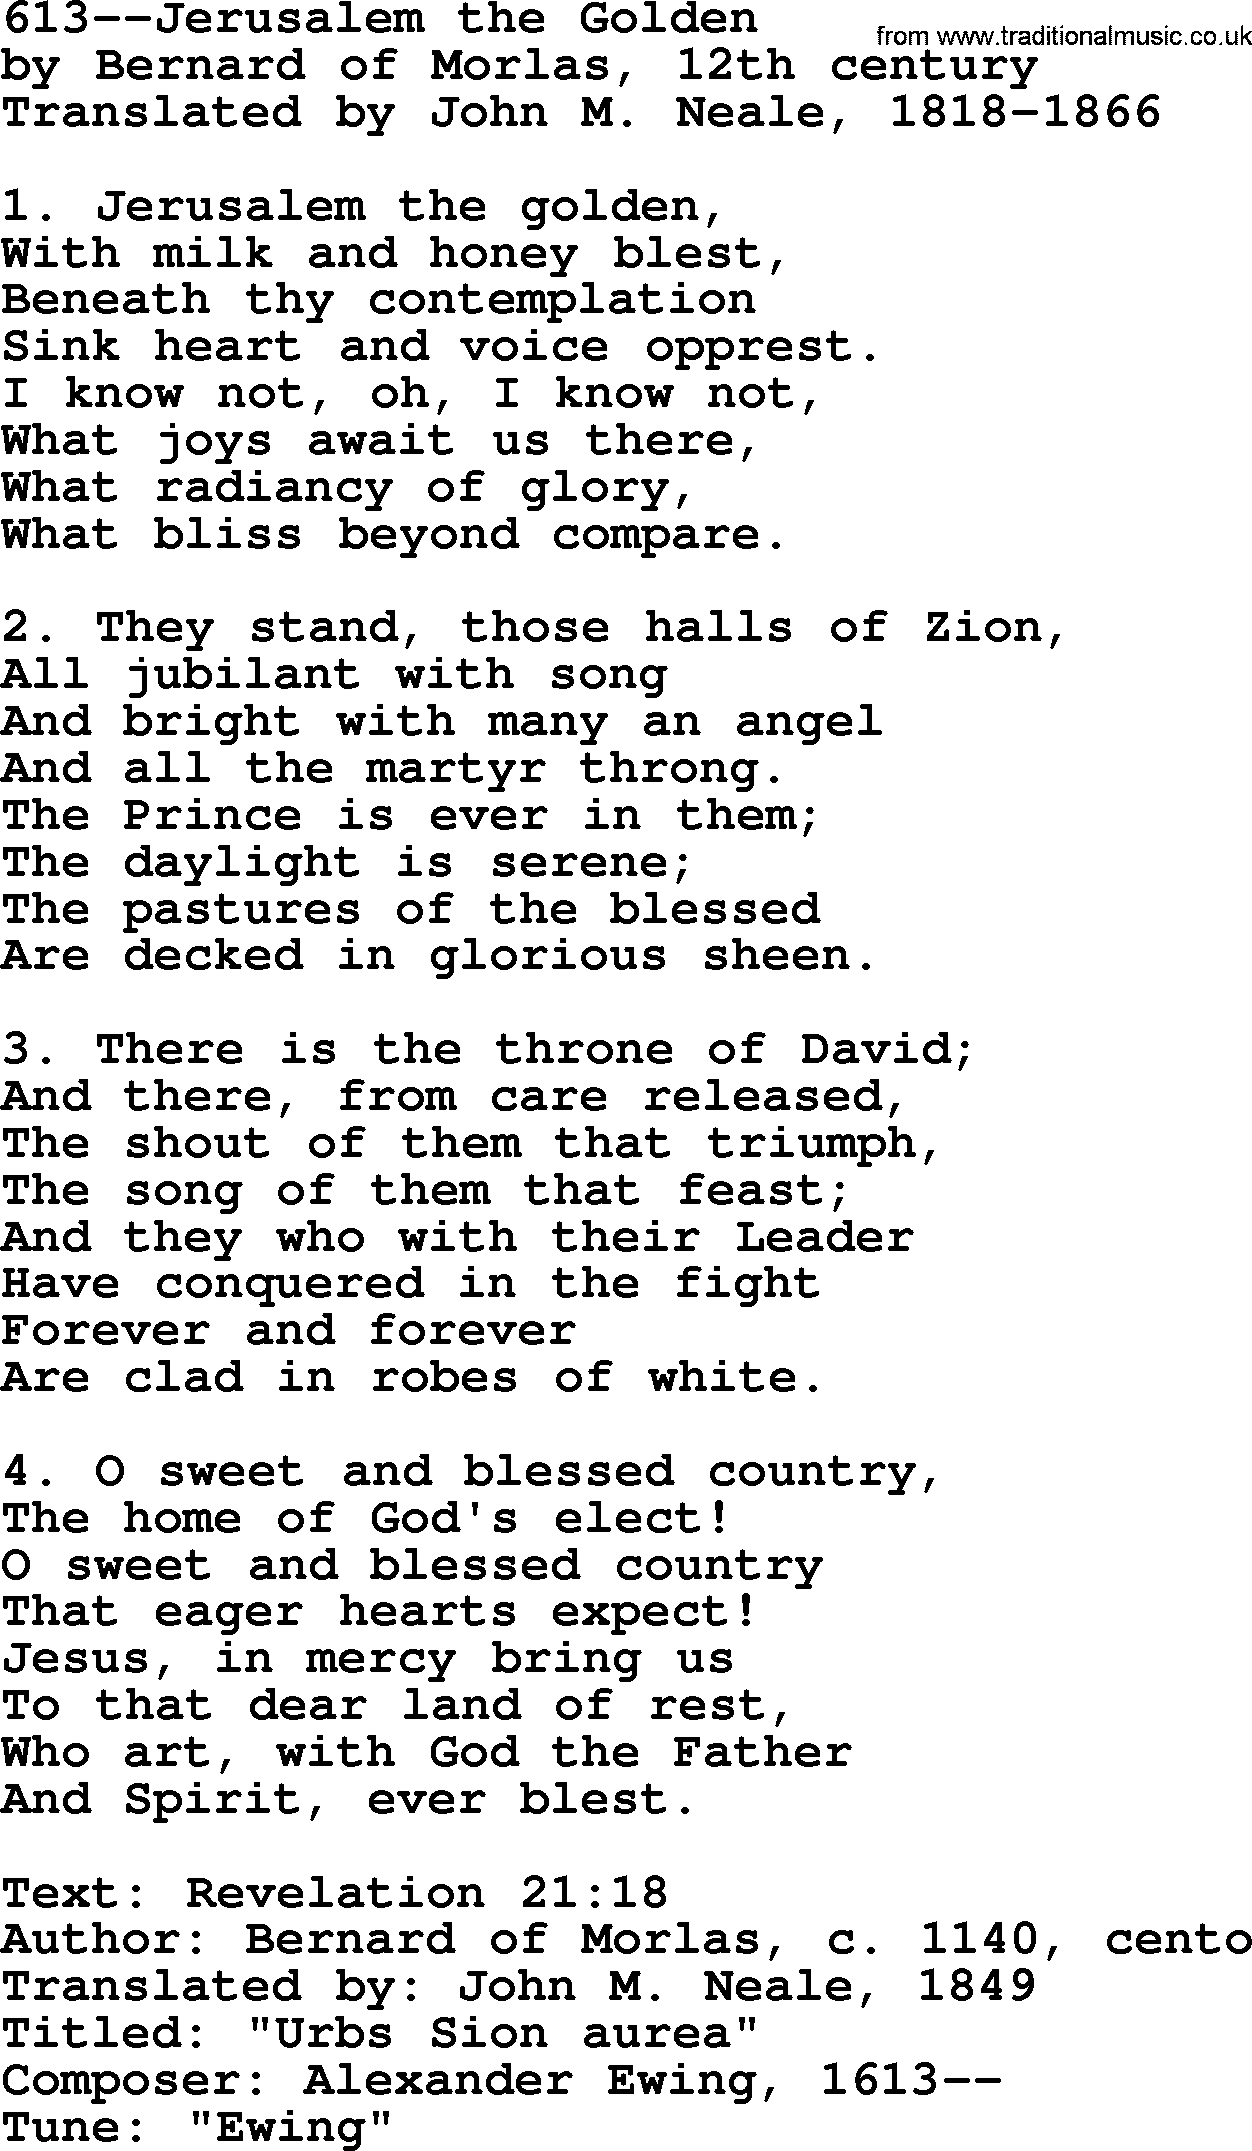 Lutheran Hymn: 613--Jerusalem the Golden.txt lyrics with PDF